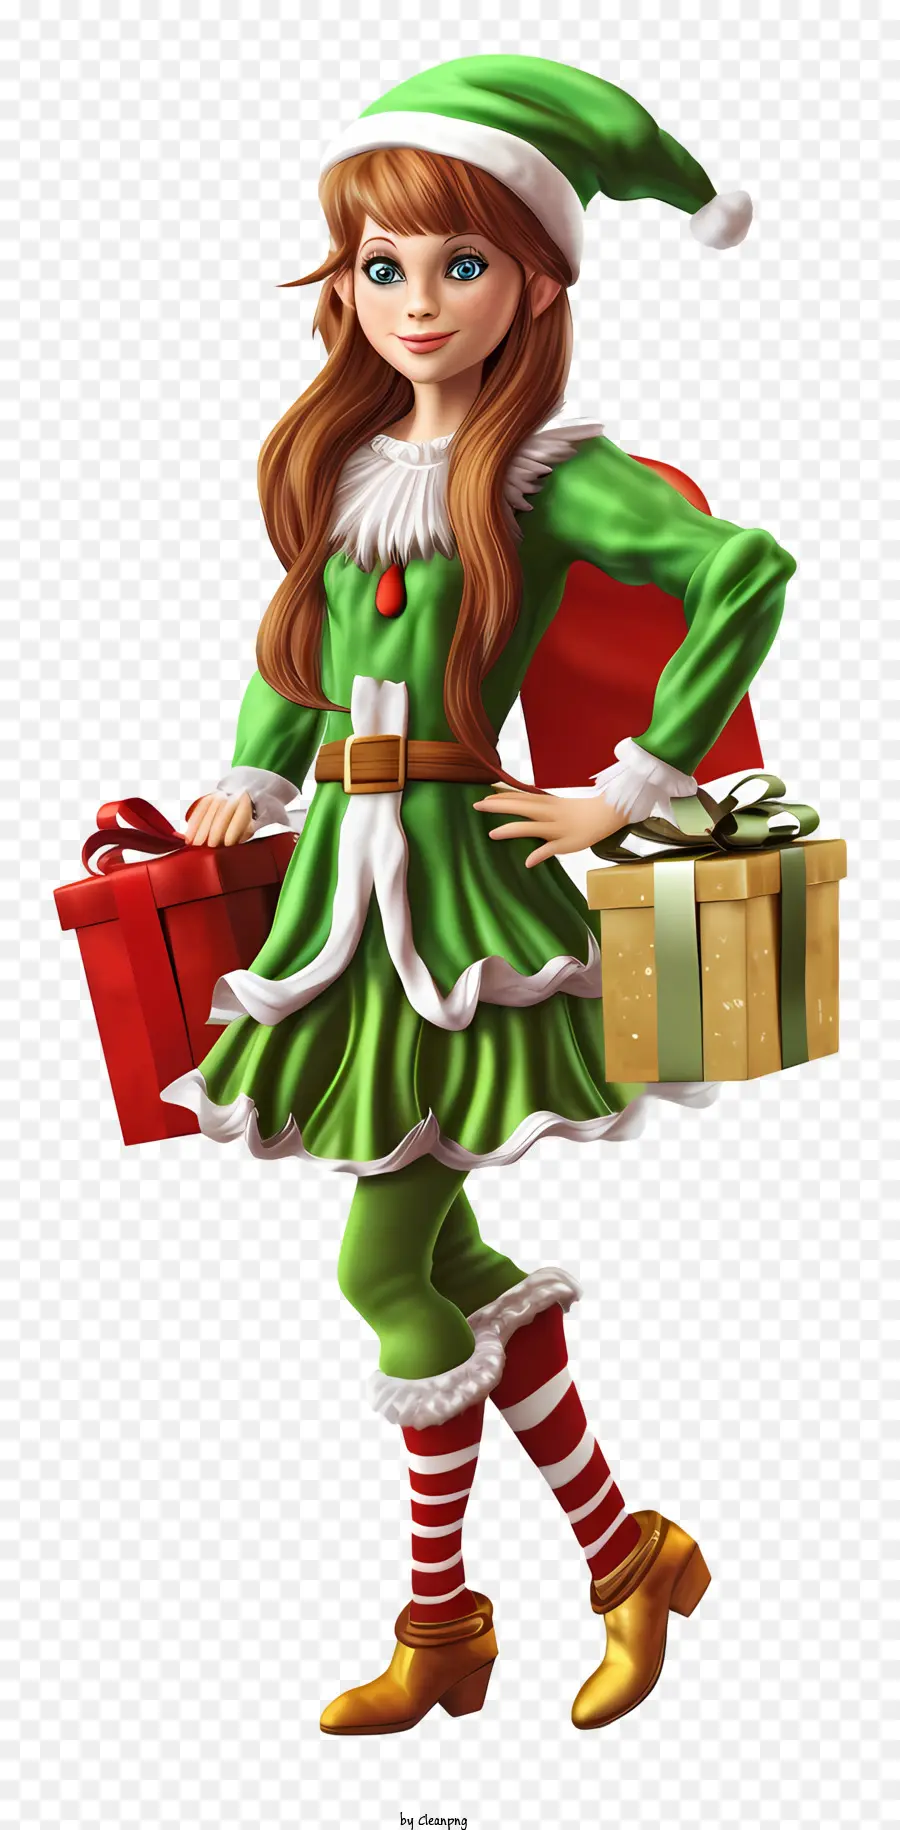 Geschenkbox - Lächelndes Mädchen trägt ein grünes und rotes Outfit